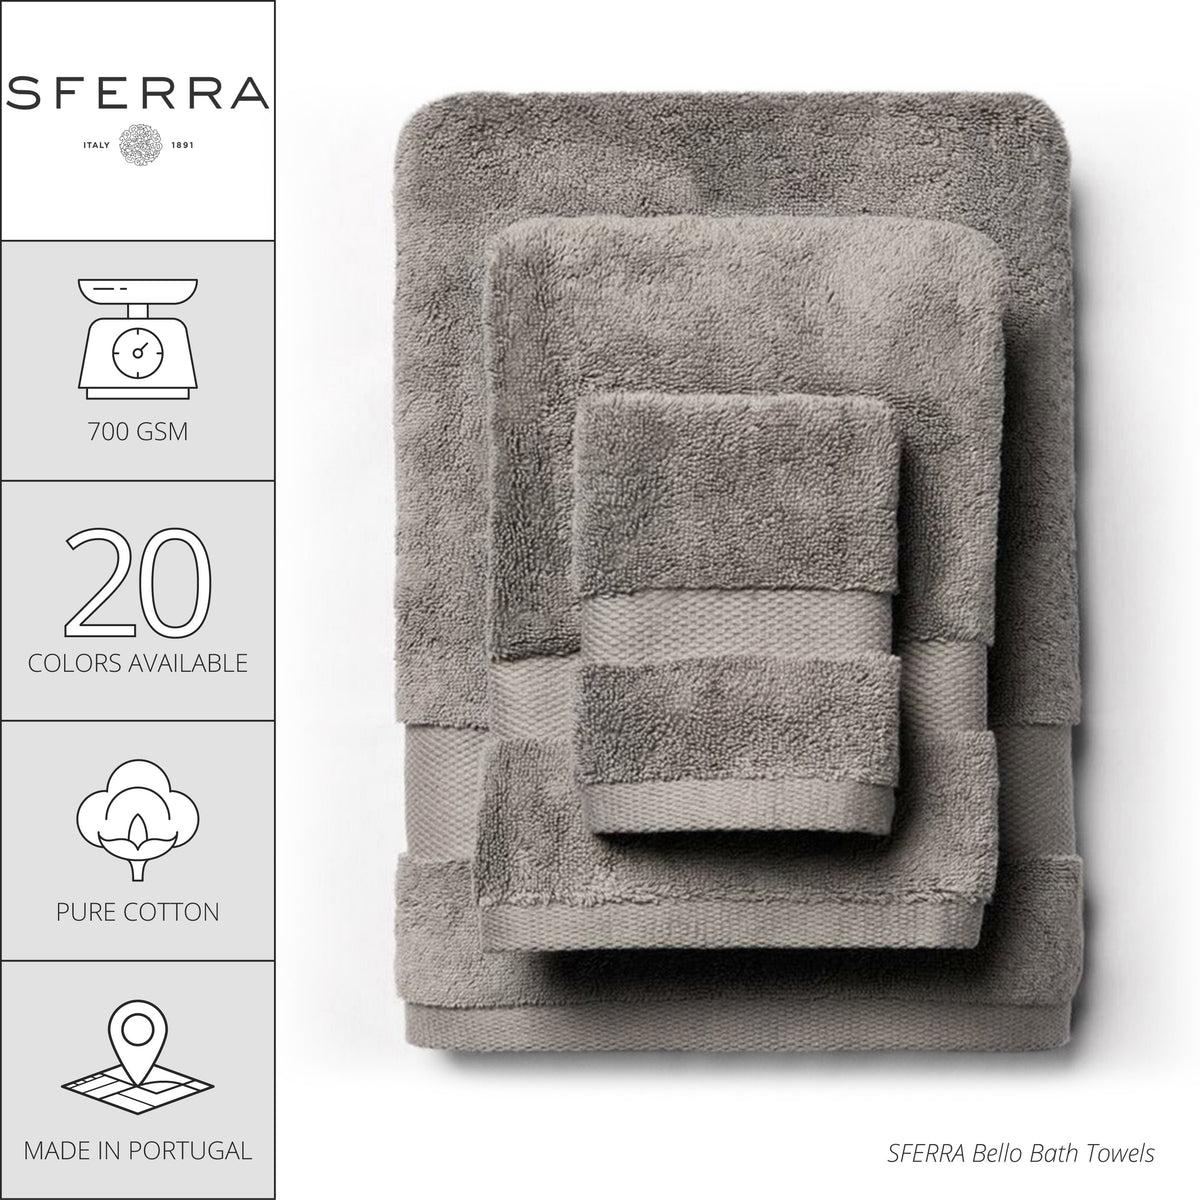 Sferra Bello Bath Towels and Mats - Copper